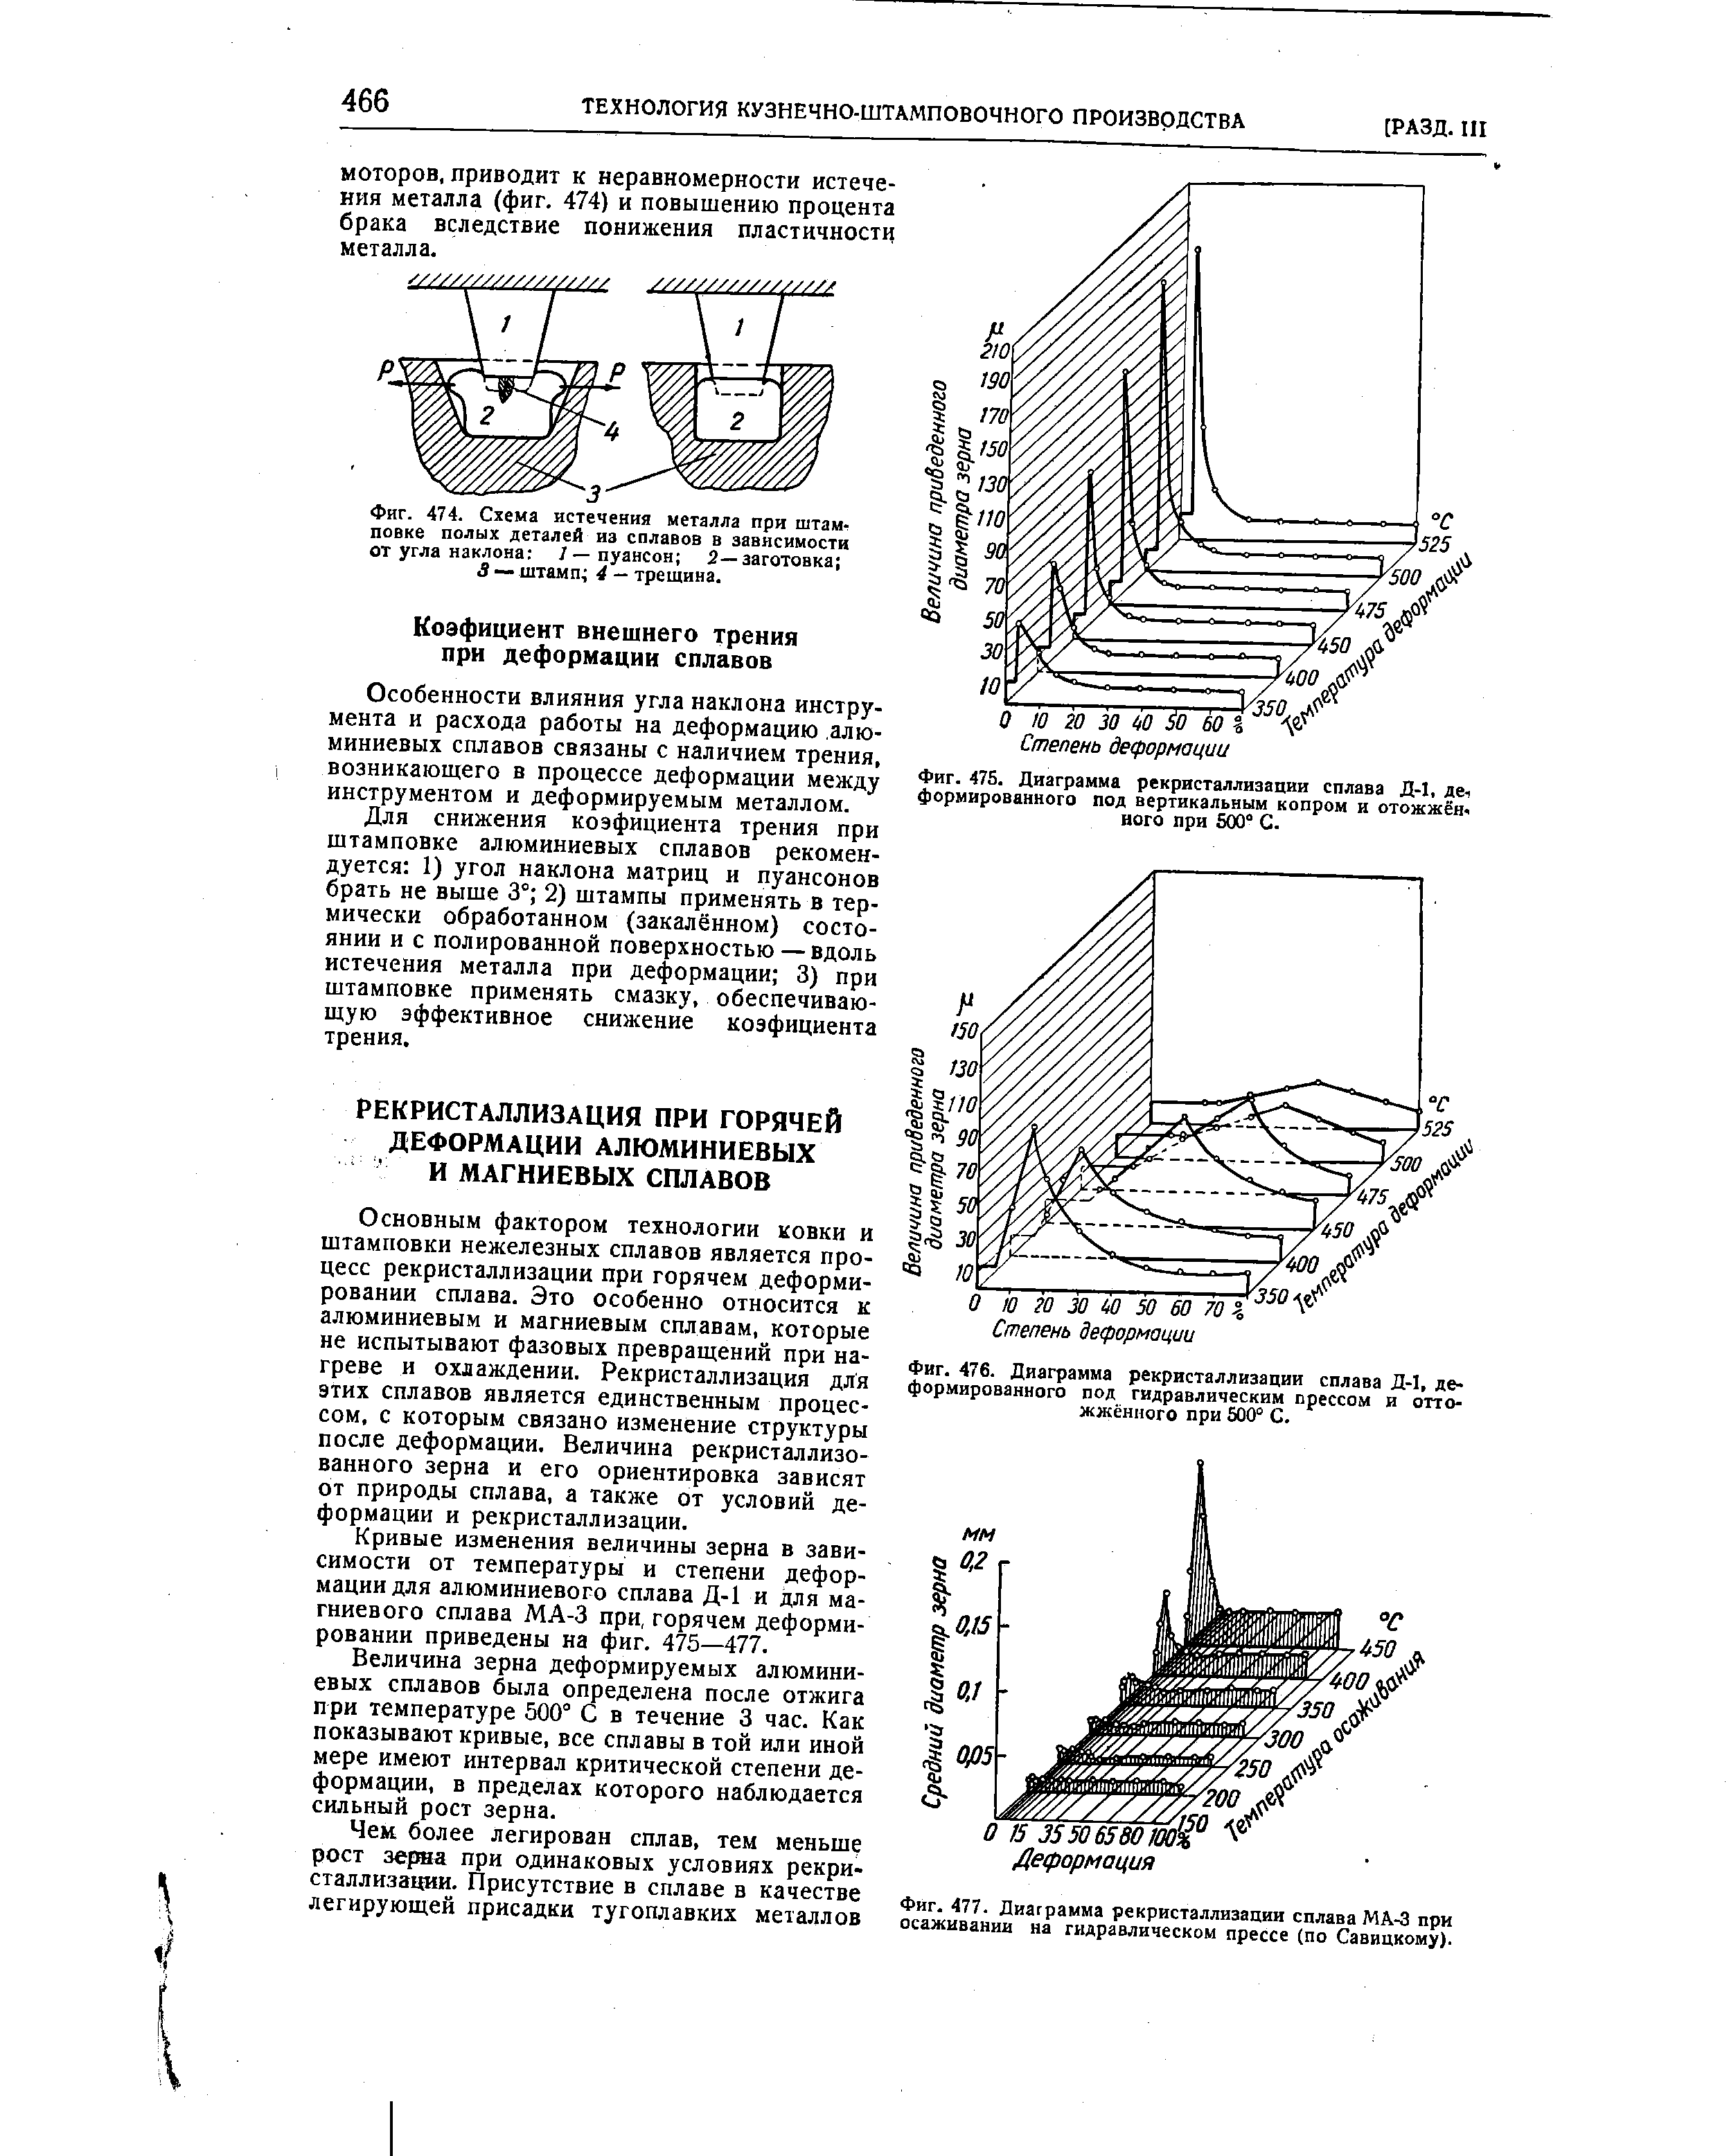 Фиг. 476. Диаграмма рекристаллизации сплава Л-1, деформированного под гидравлическим прессом и отто-жжёниого при 600° С.
